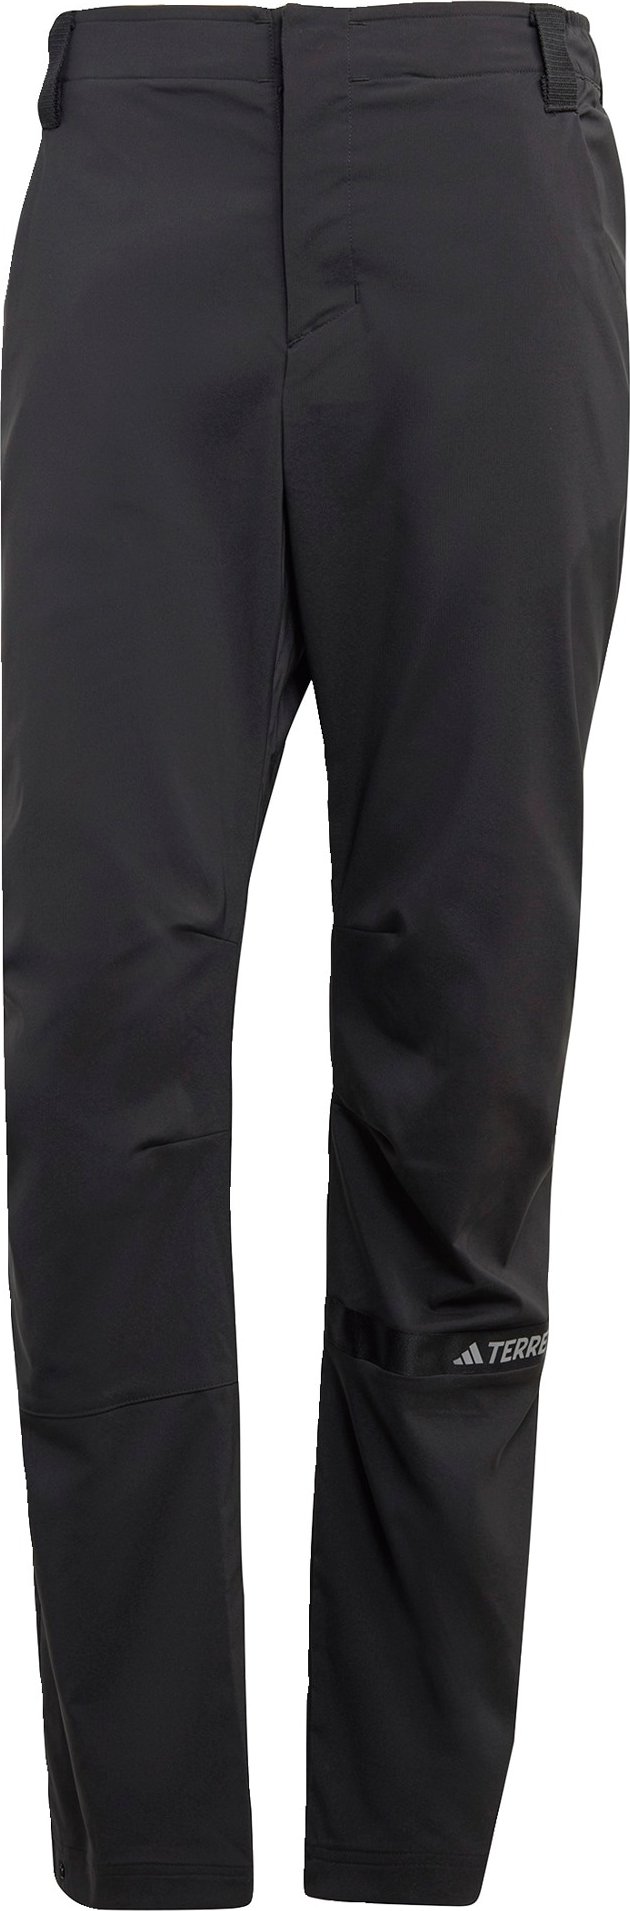 Outdoorové kalhoty 'Multi ' adidas Terrex černá